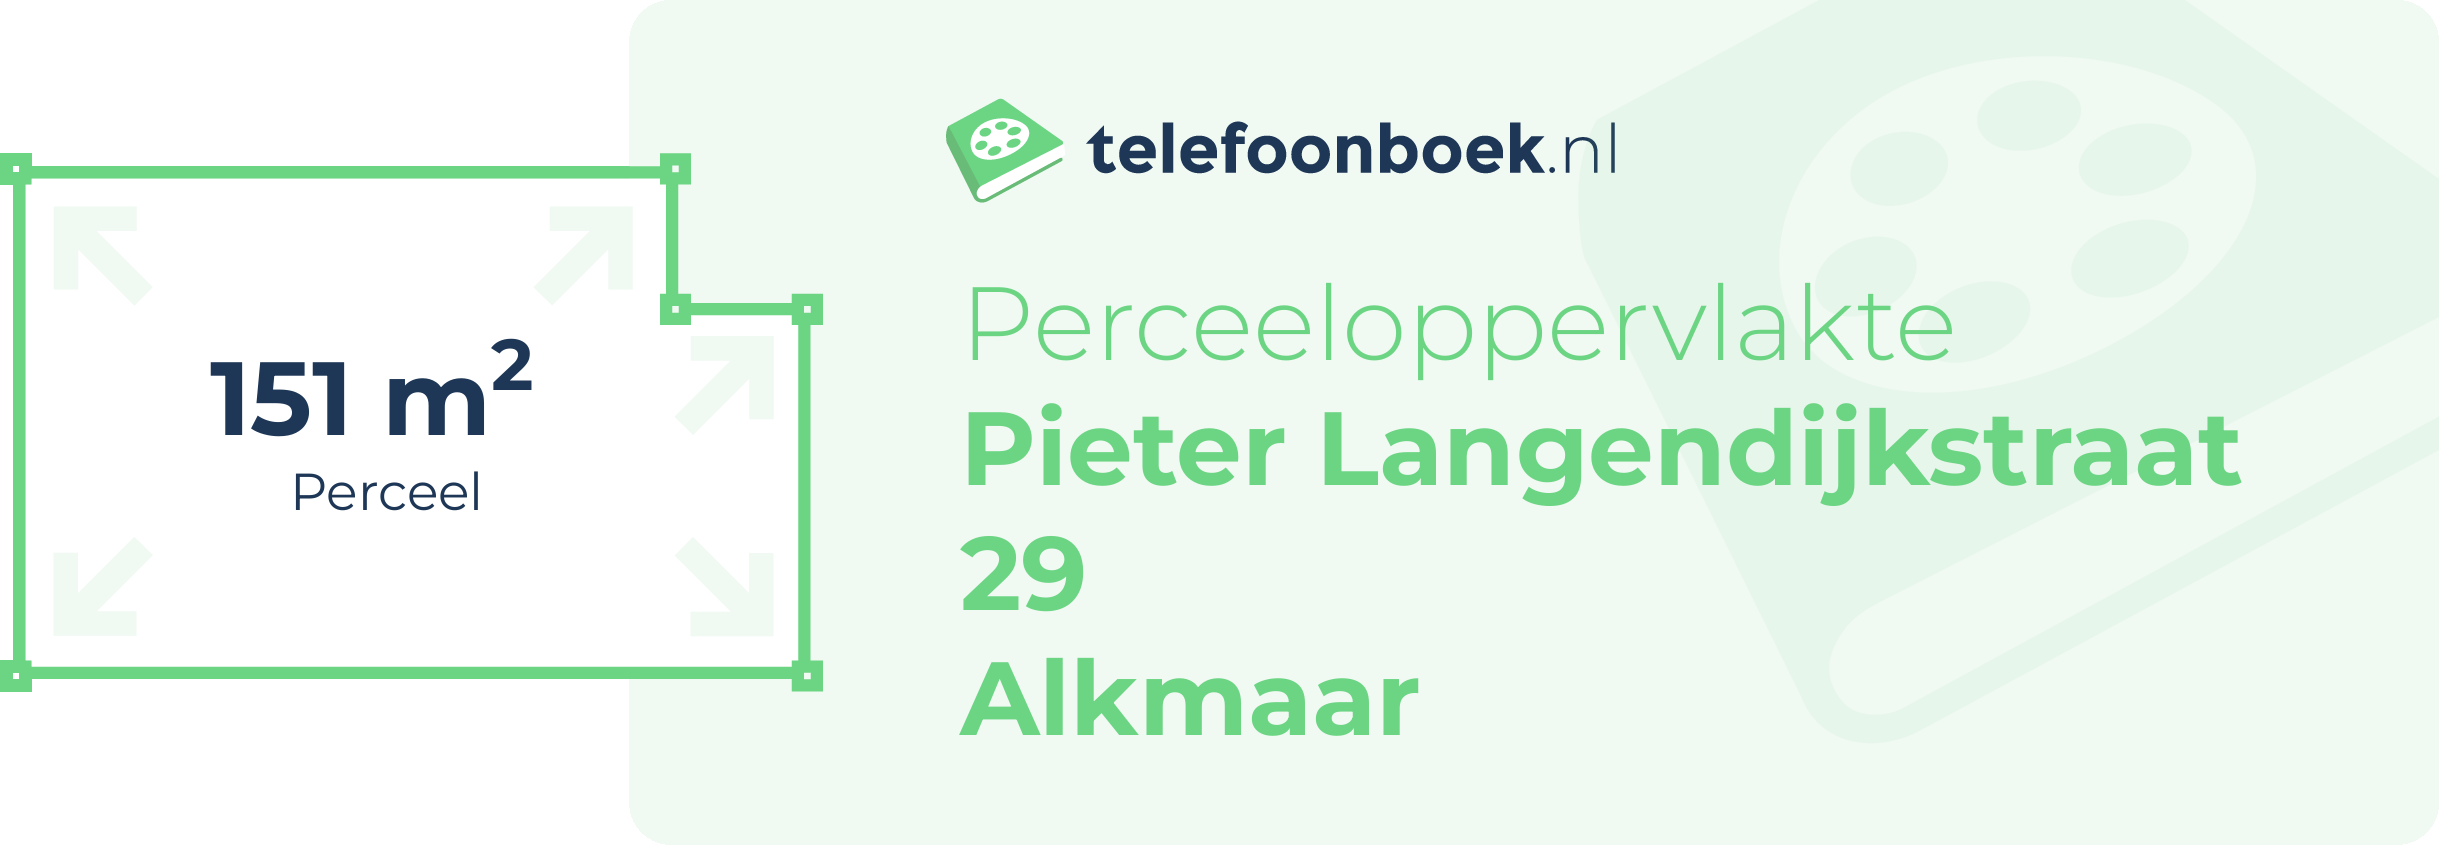 Perceeloppervlakte Pieter Langendijkstraat 29 Alkmaar